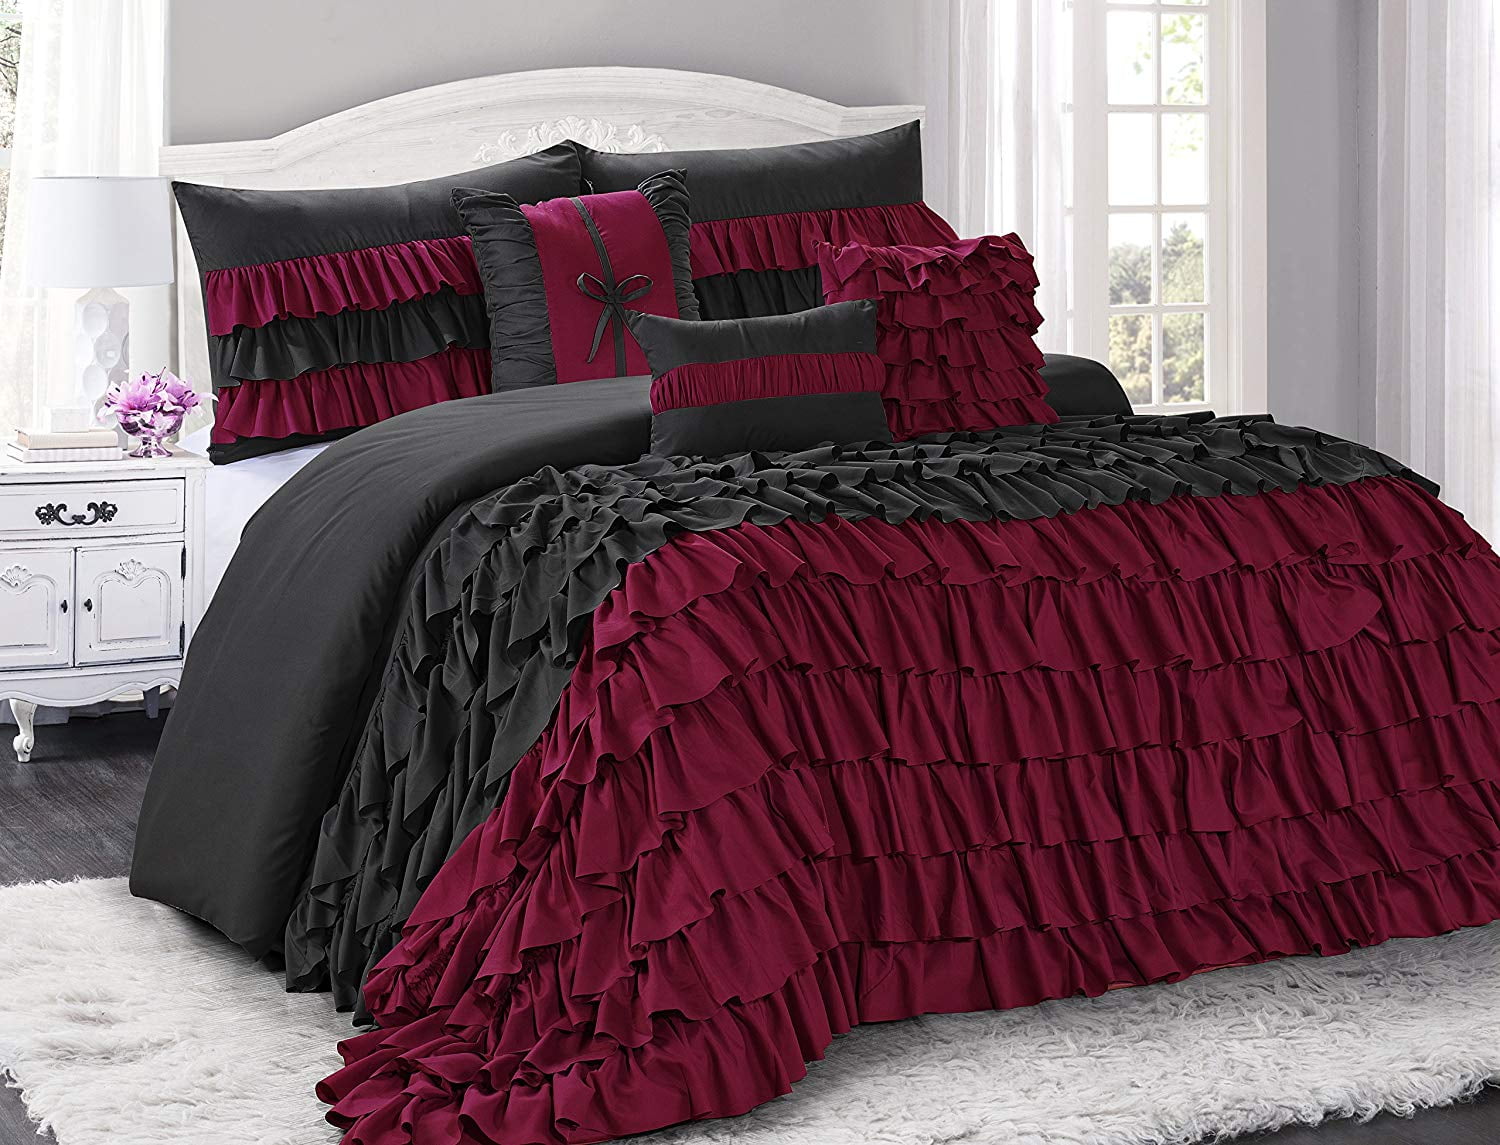 Chic Home Carlton Comforter Set - Queen 86x86, Burgundy - Queen 